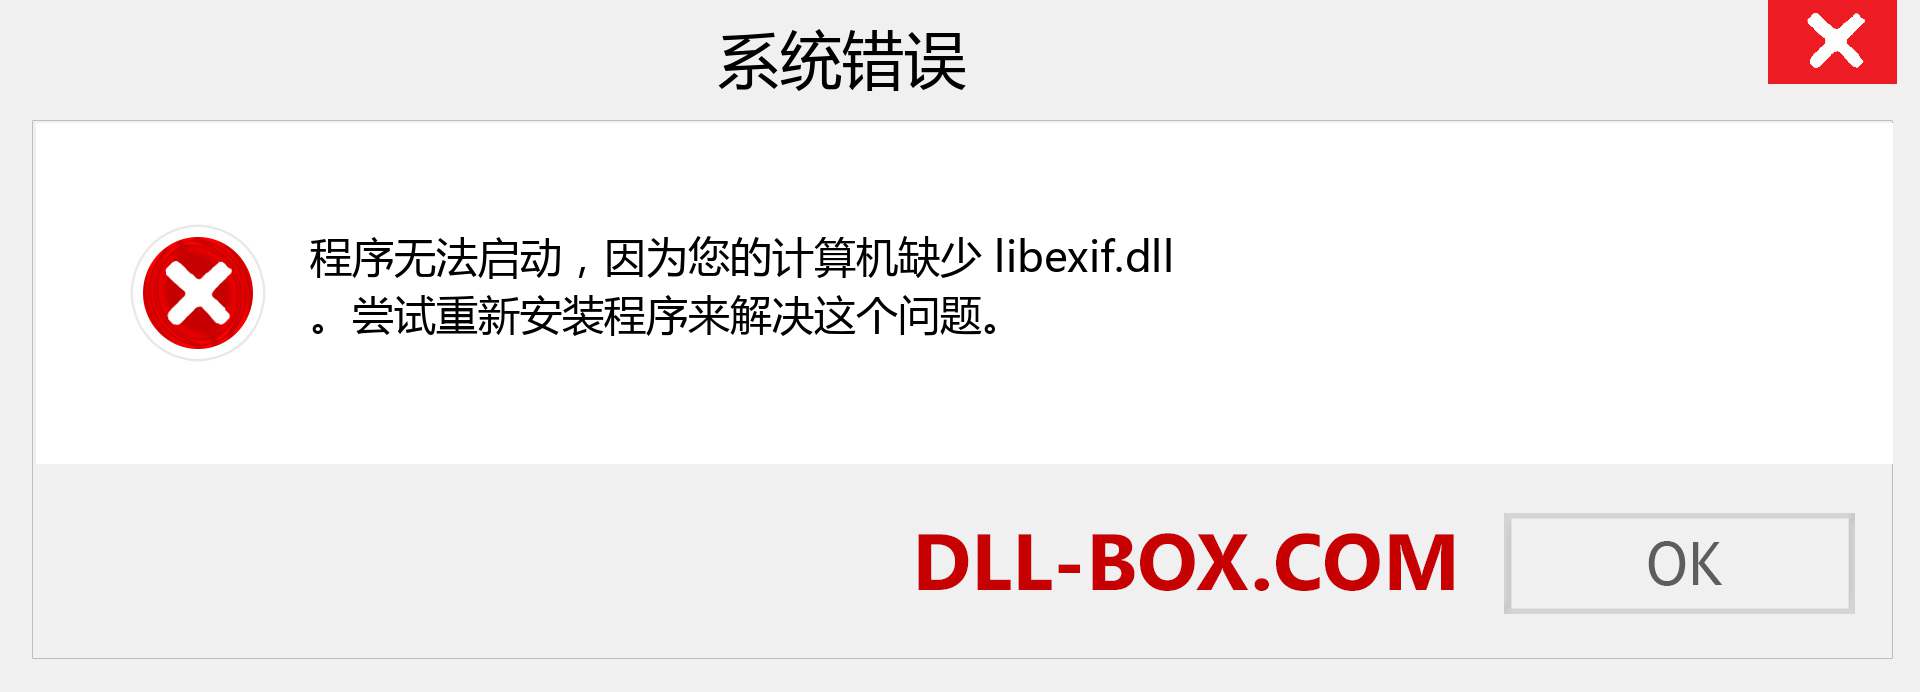 libexif.dll 文件丢失？。 适用于 Windows 7、8、10 的下载 - 修复 Windows、照片、图像上的 libexif dll 丢失错误